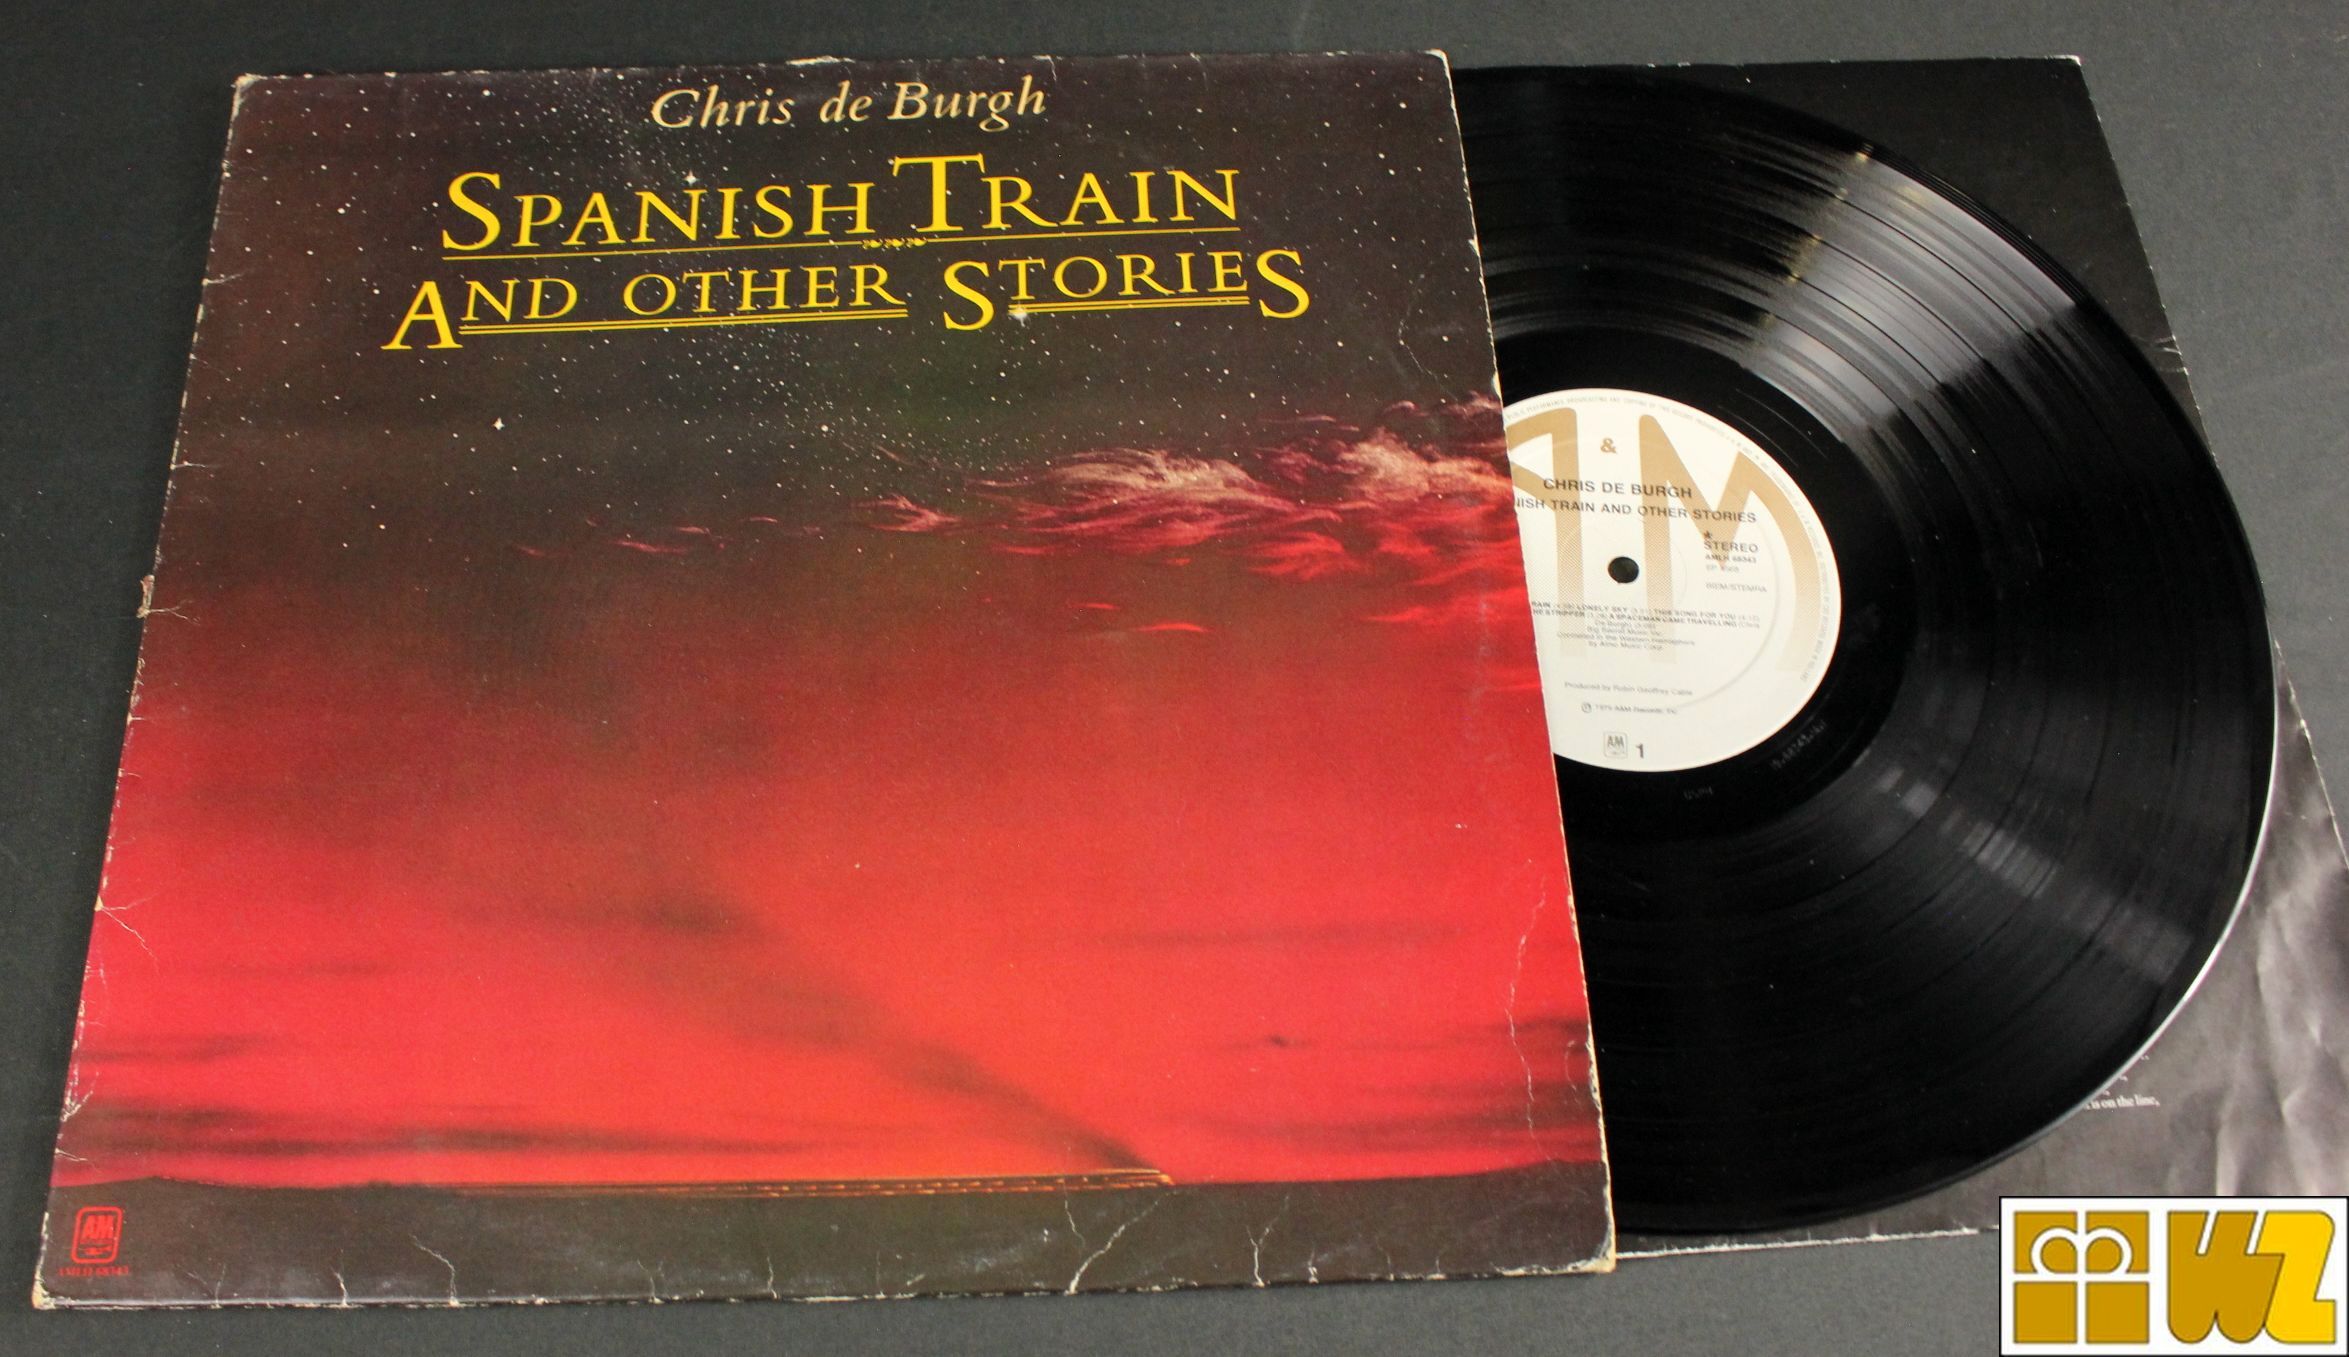 Chris de Burgh - Spanish Train And Other Stories (Vinyl) LP, gebraucht